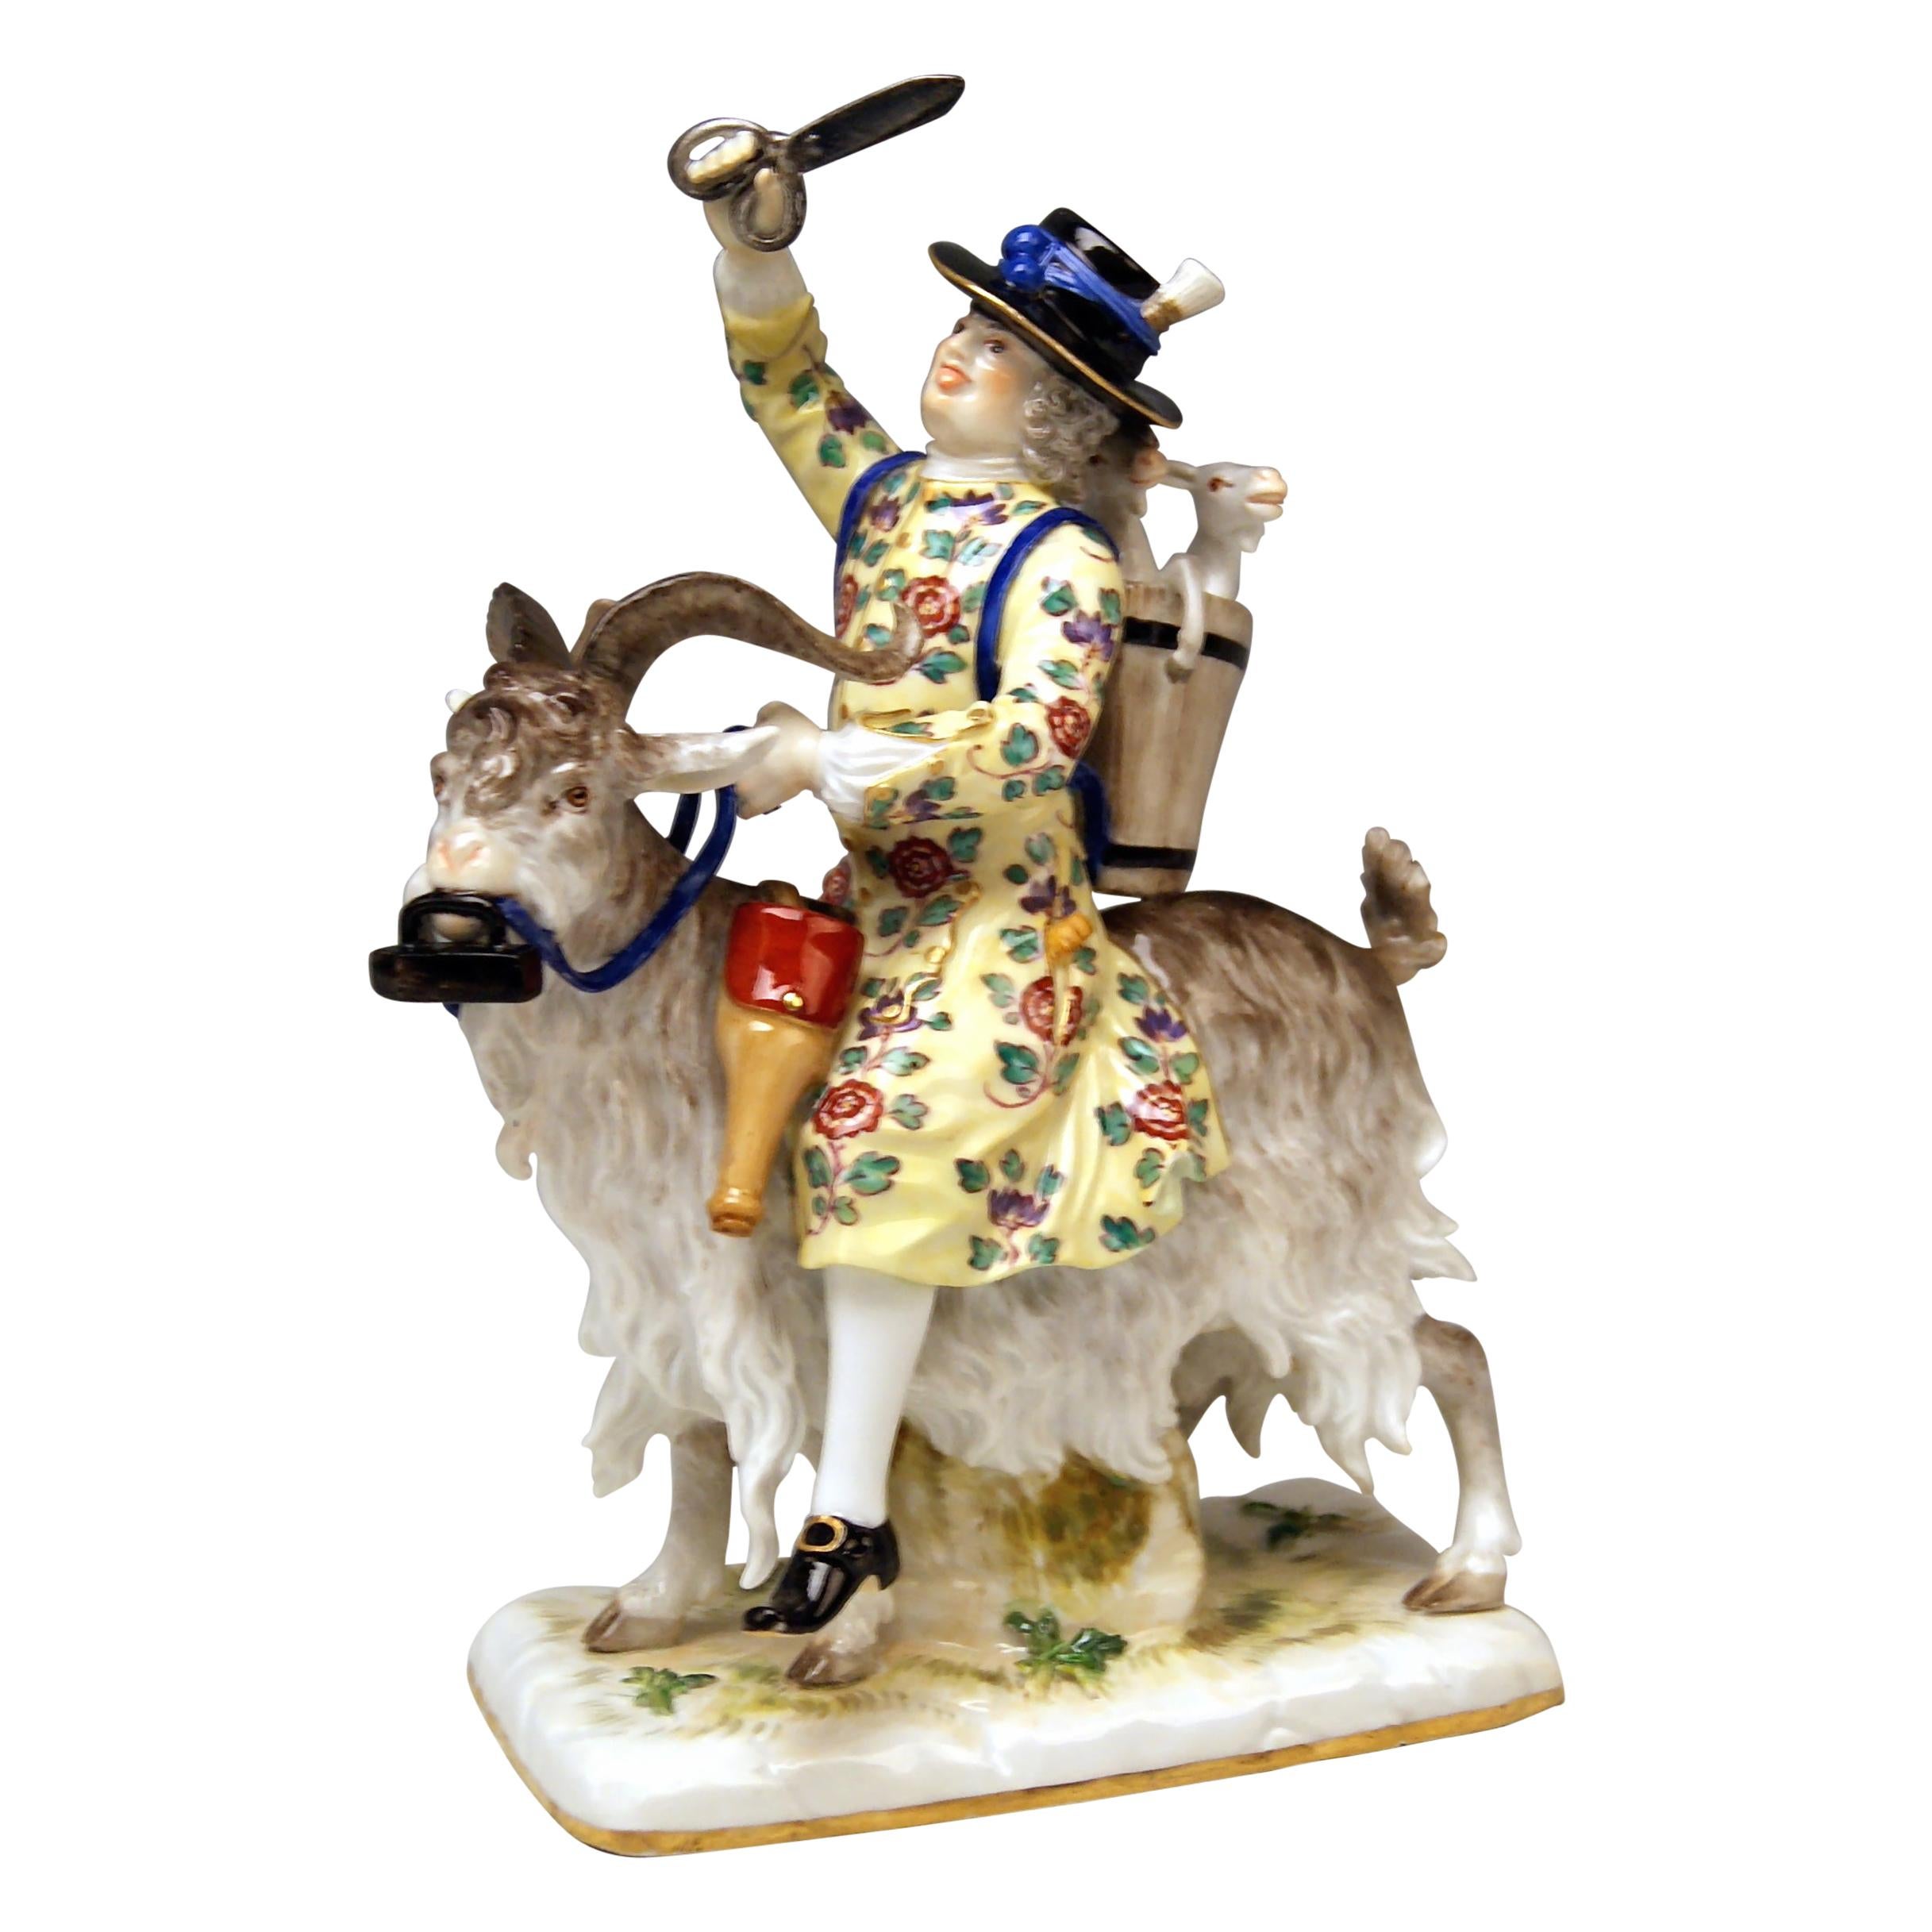 Meissen Porcelain Figurine Tailor Riding on Goat by Kaendler Model 171